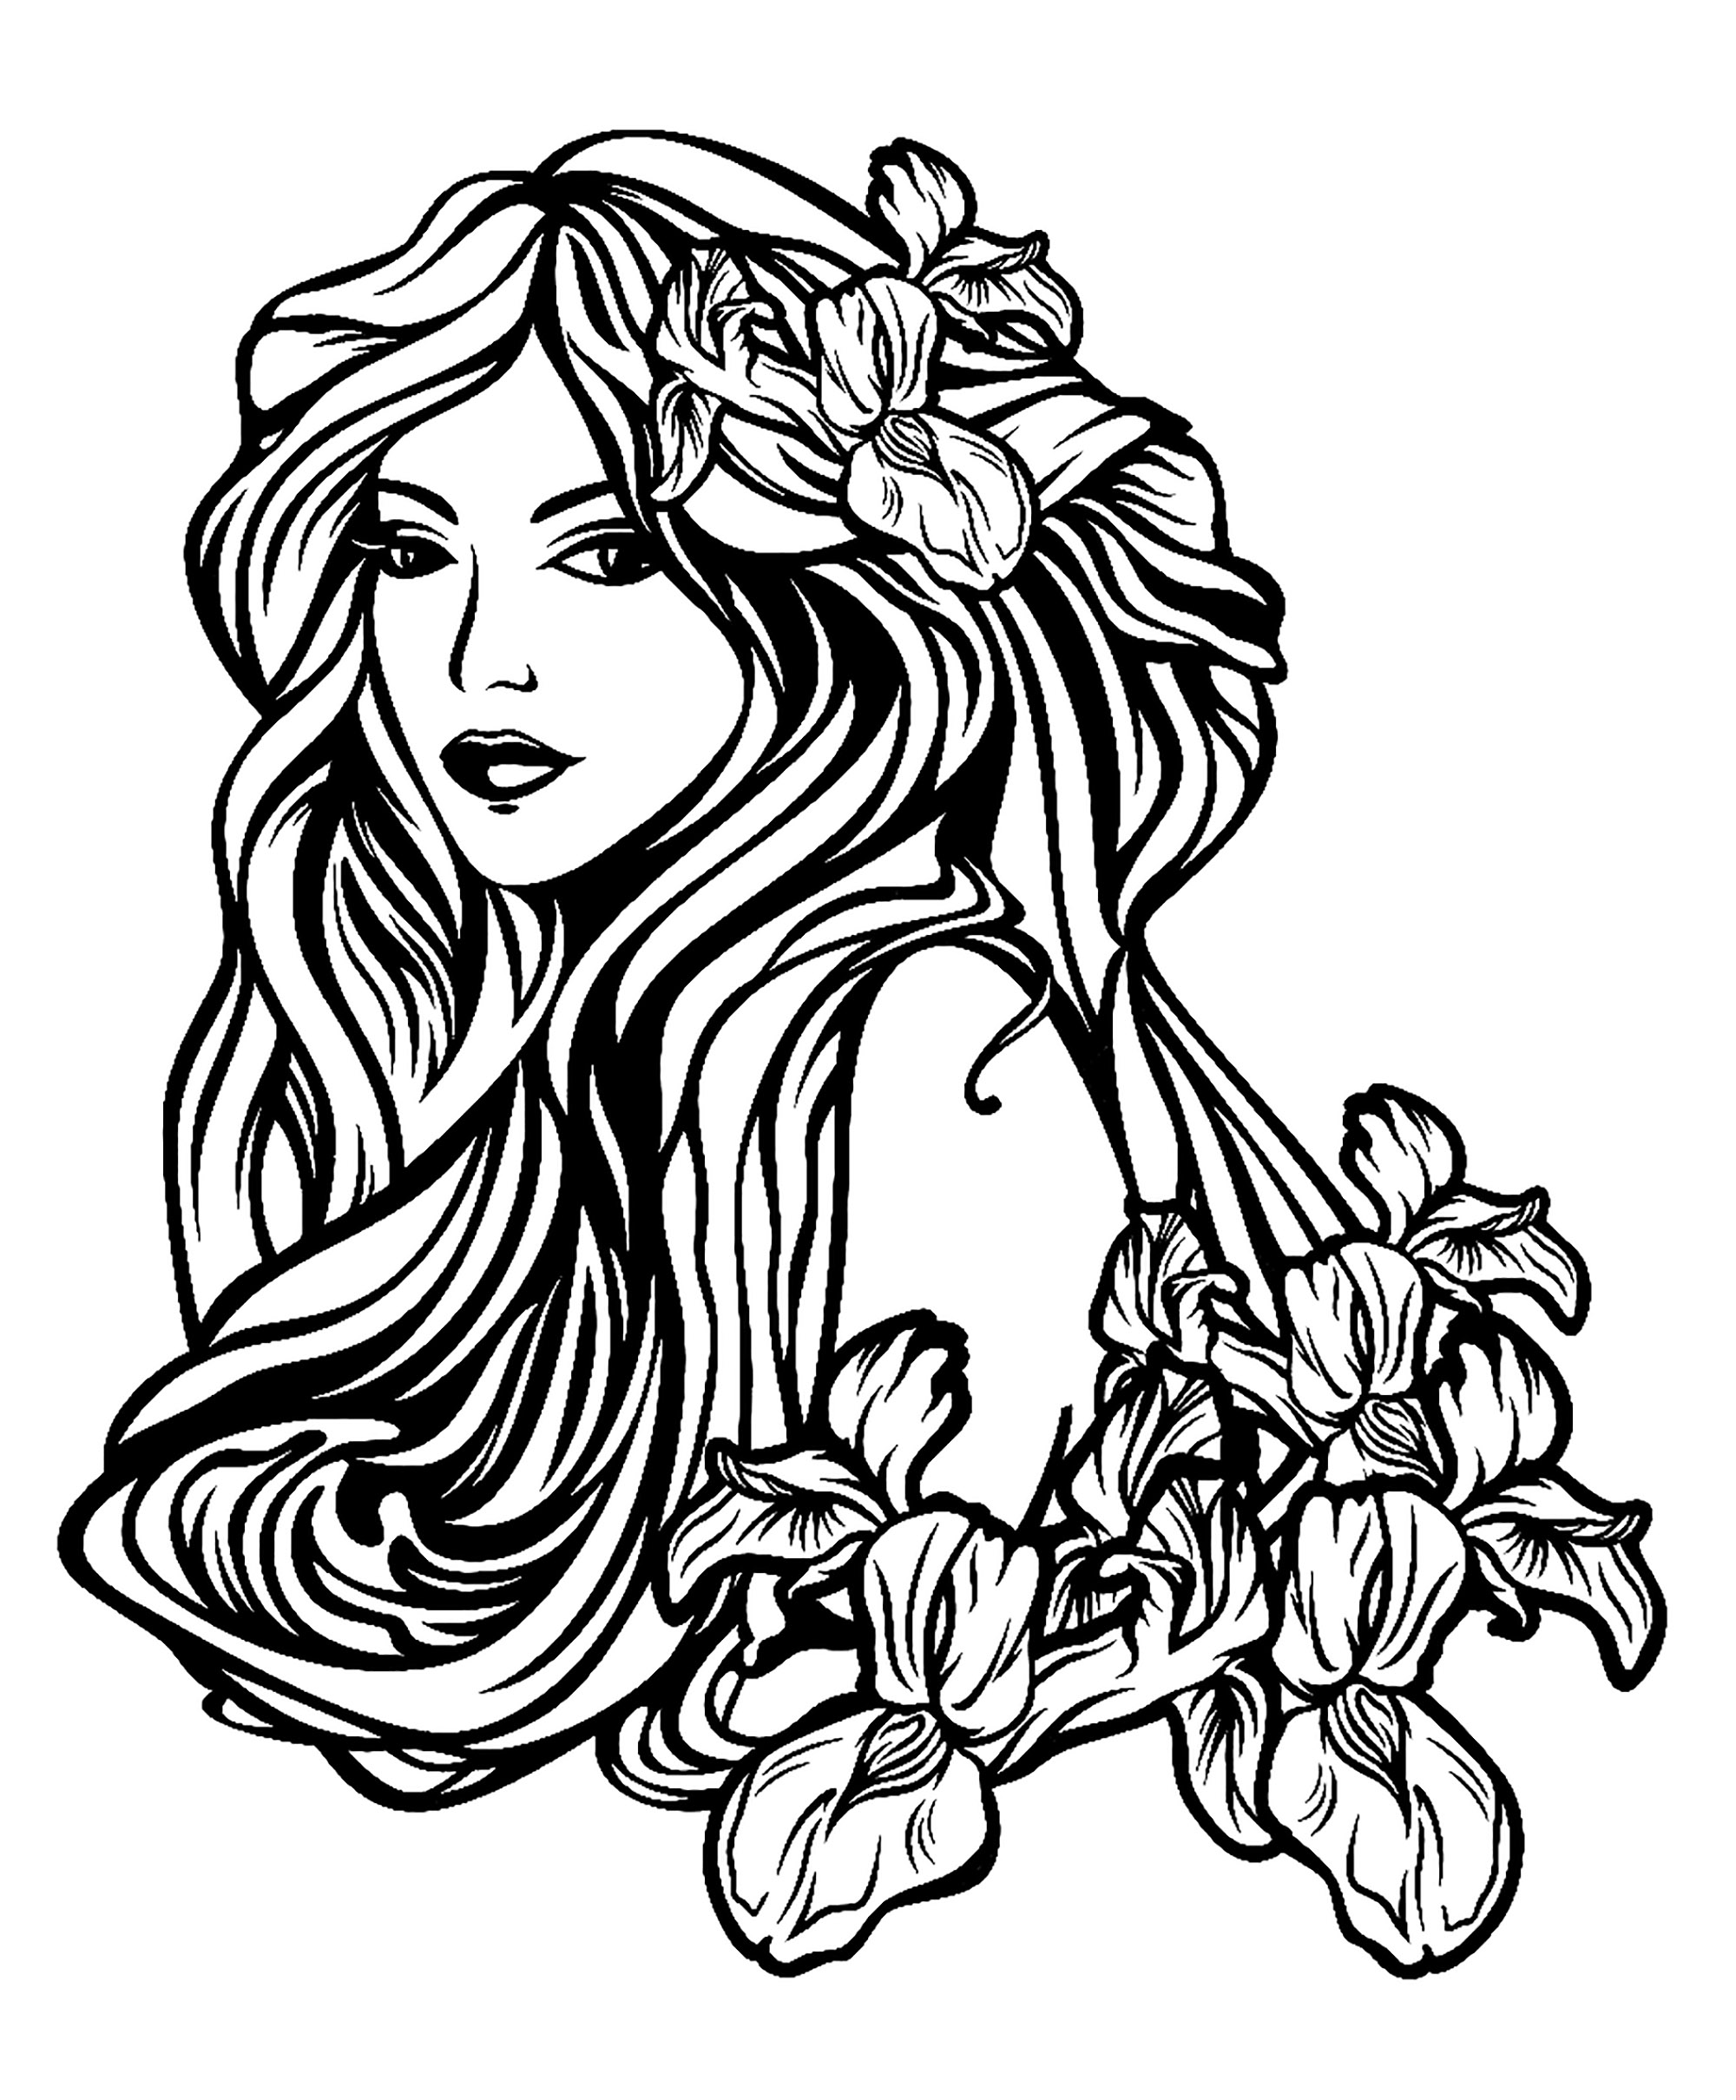 Bella donna con capelli lunghi tra fiori di iris - stile Art nouveau, perfetto per un tatuaggio, Artista : Svetlana Alyuk   Fonte : 123rf